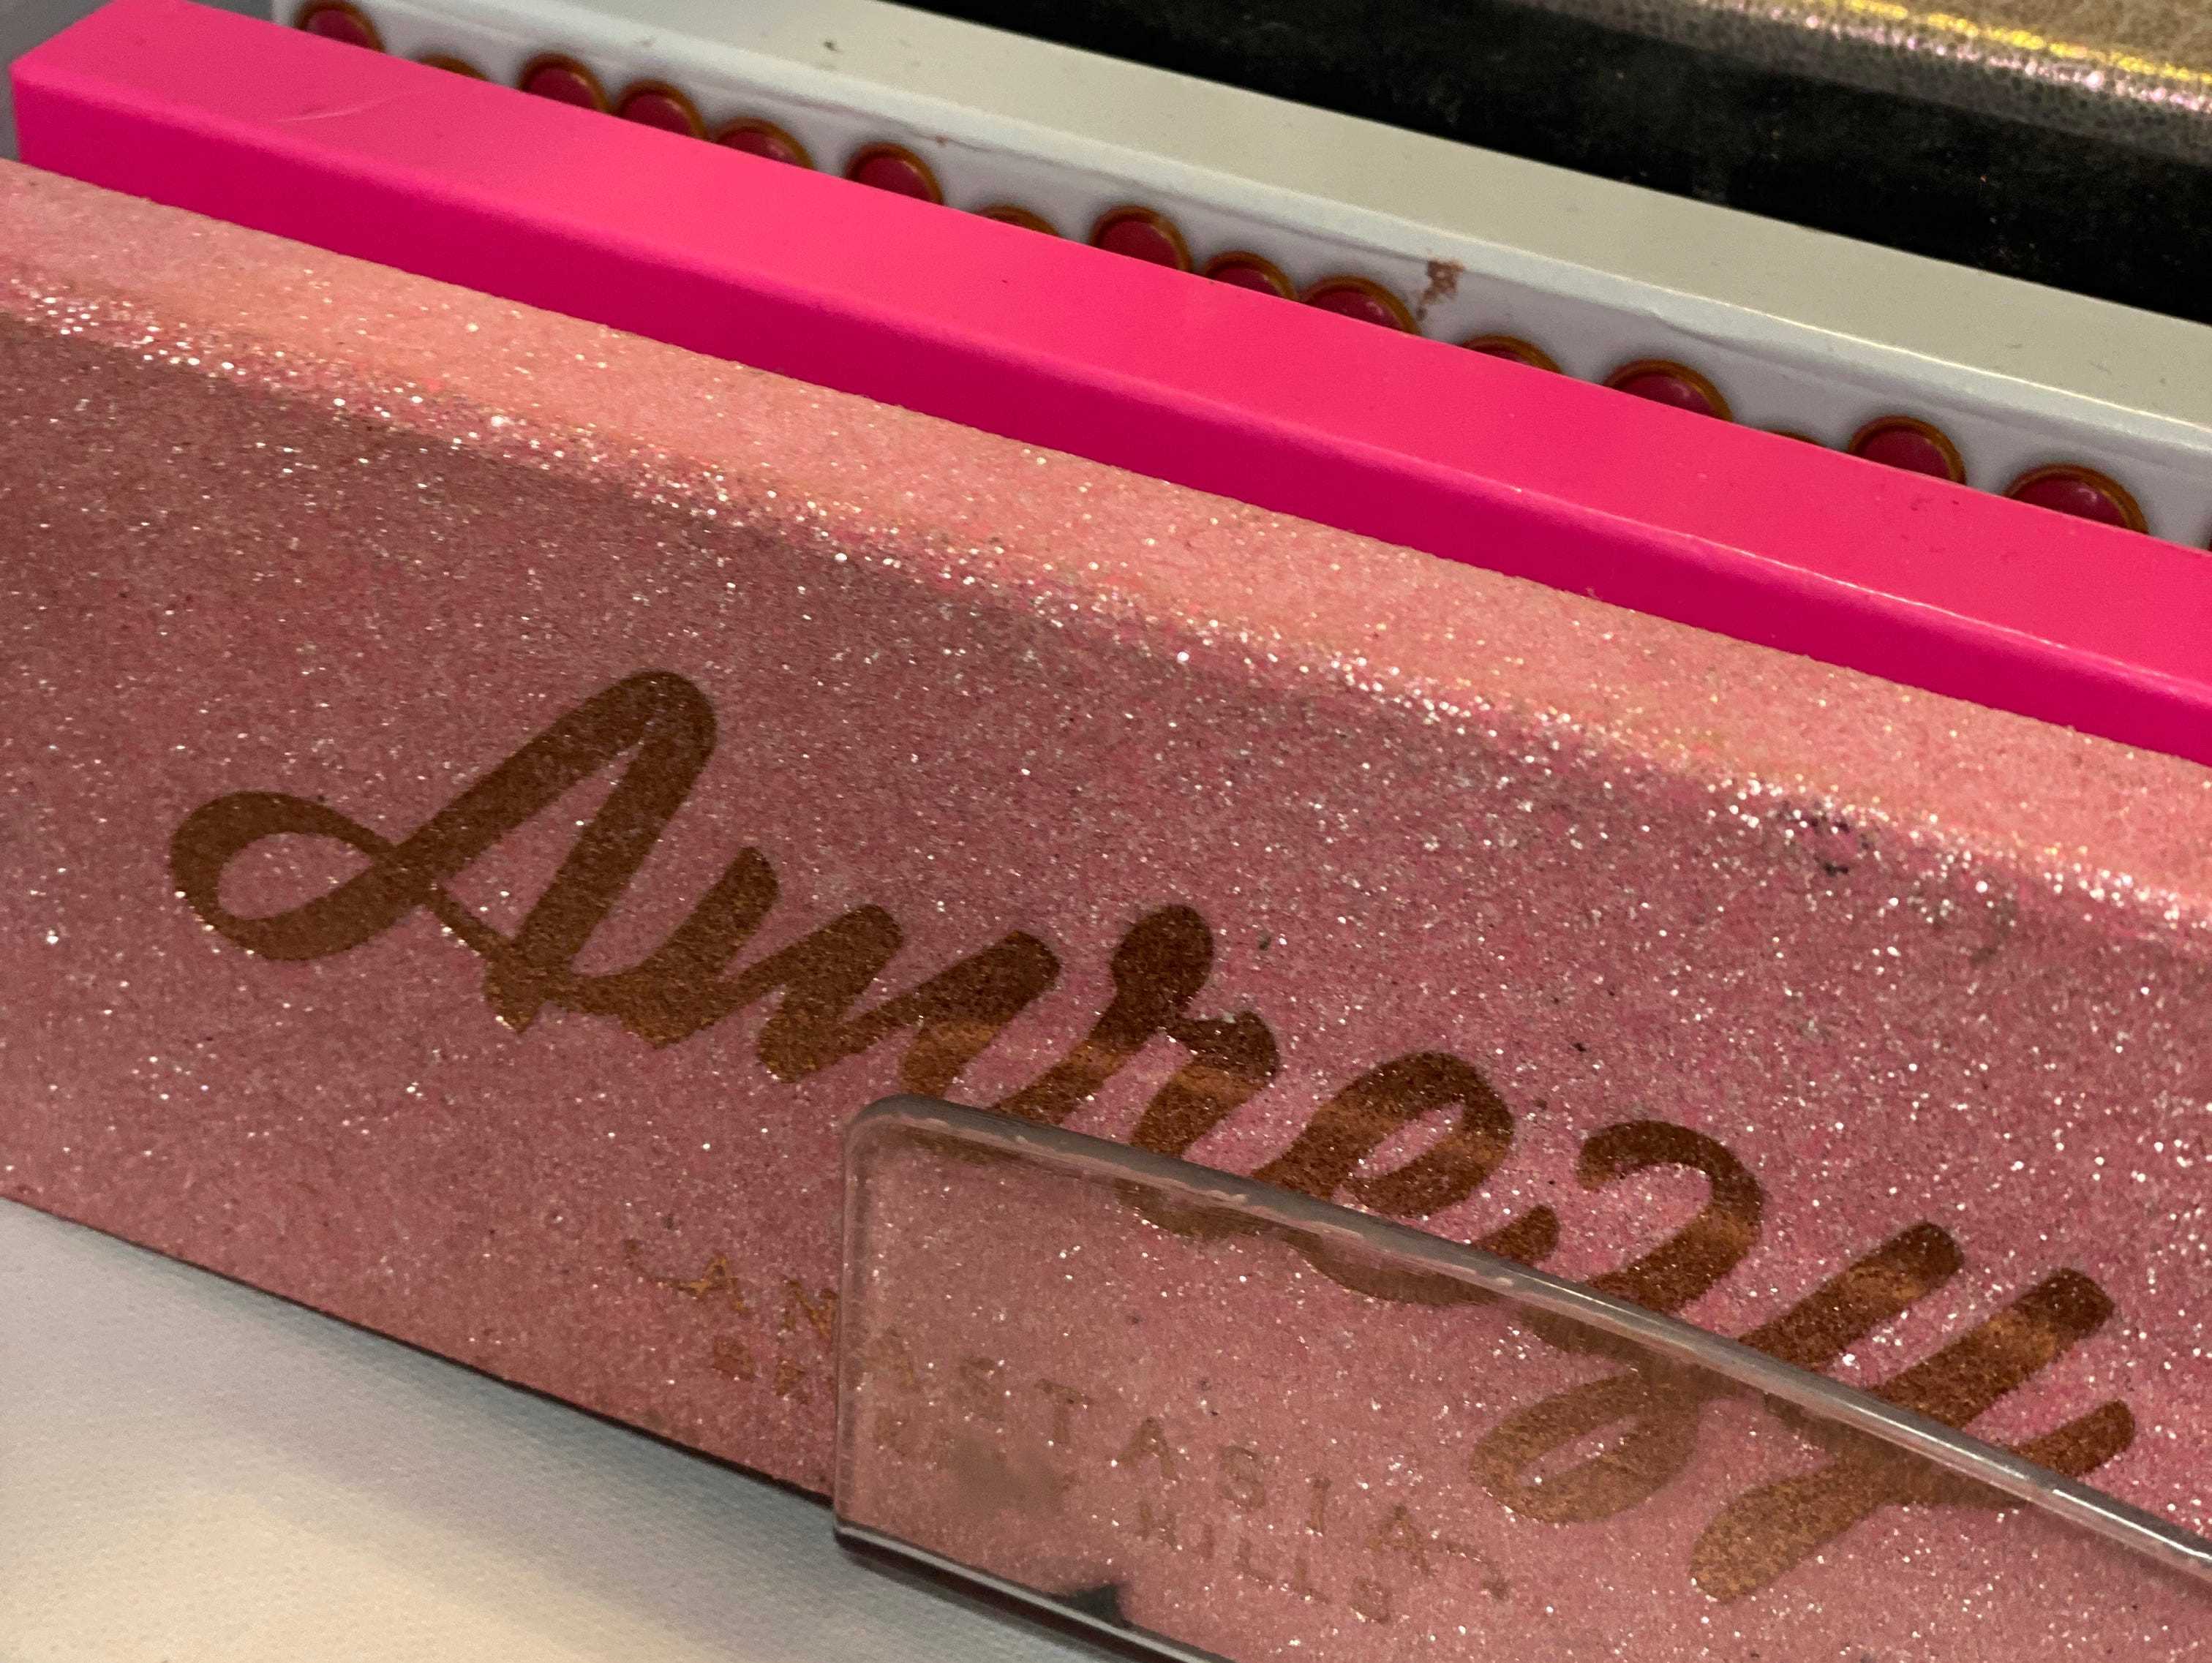 Sammlung von Lidschattenpaletten in einer Schublade, bei der außer der vorderen Palette nur Stacheln sichtbar sind.  Die vordere Palette ist rosa und glitzert mit goldenem Text, auf dem „Amrezy“ in großen Buchstaben und kleiner „Anastasia Beverly Hills“-Text darunter steht